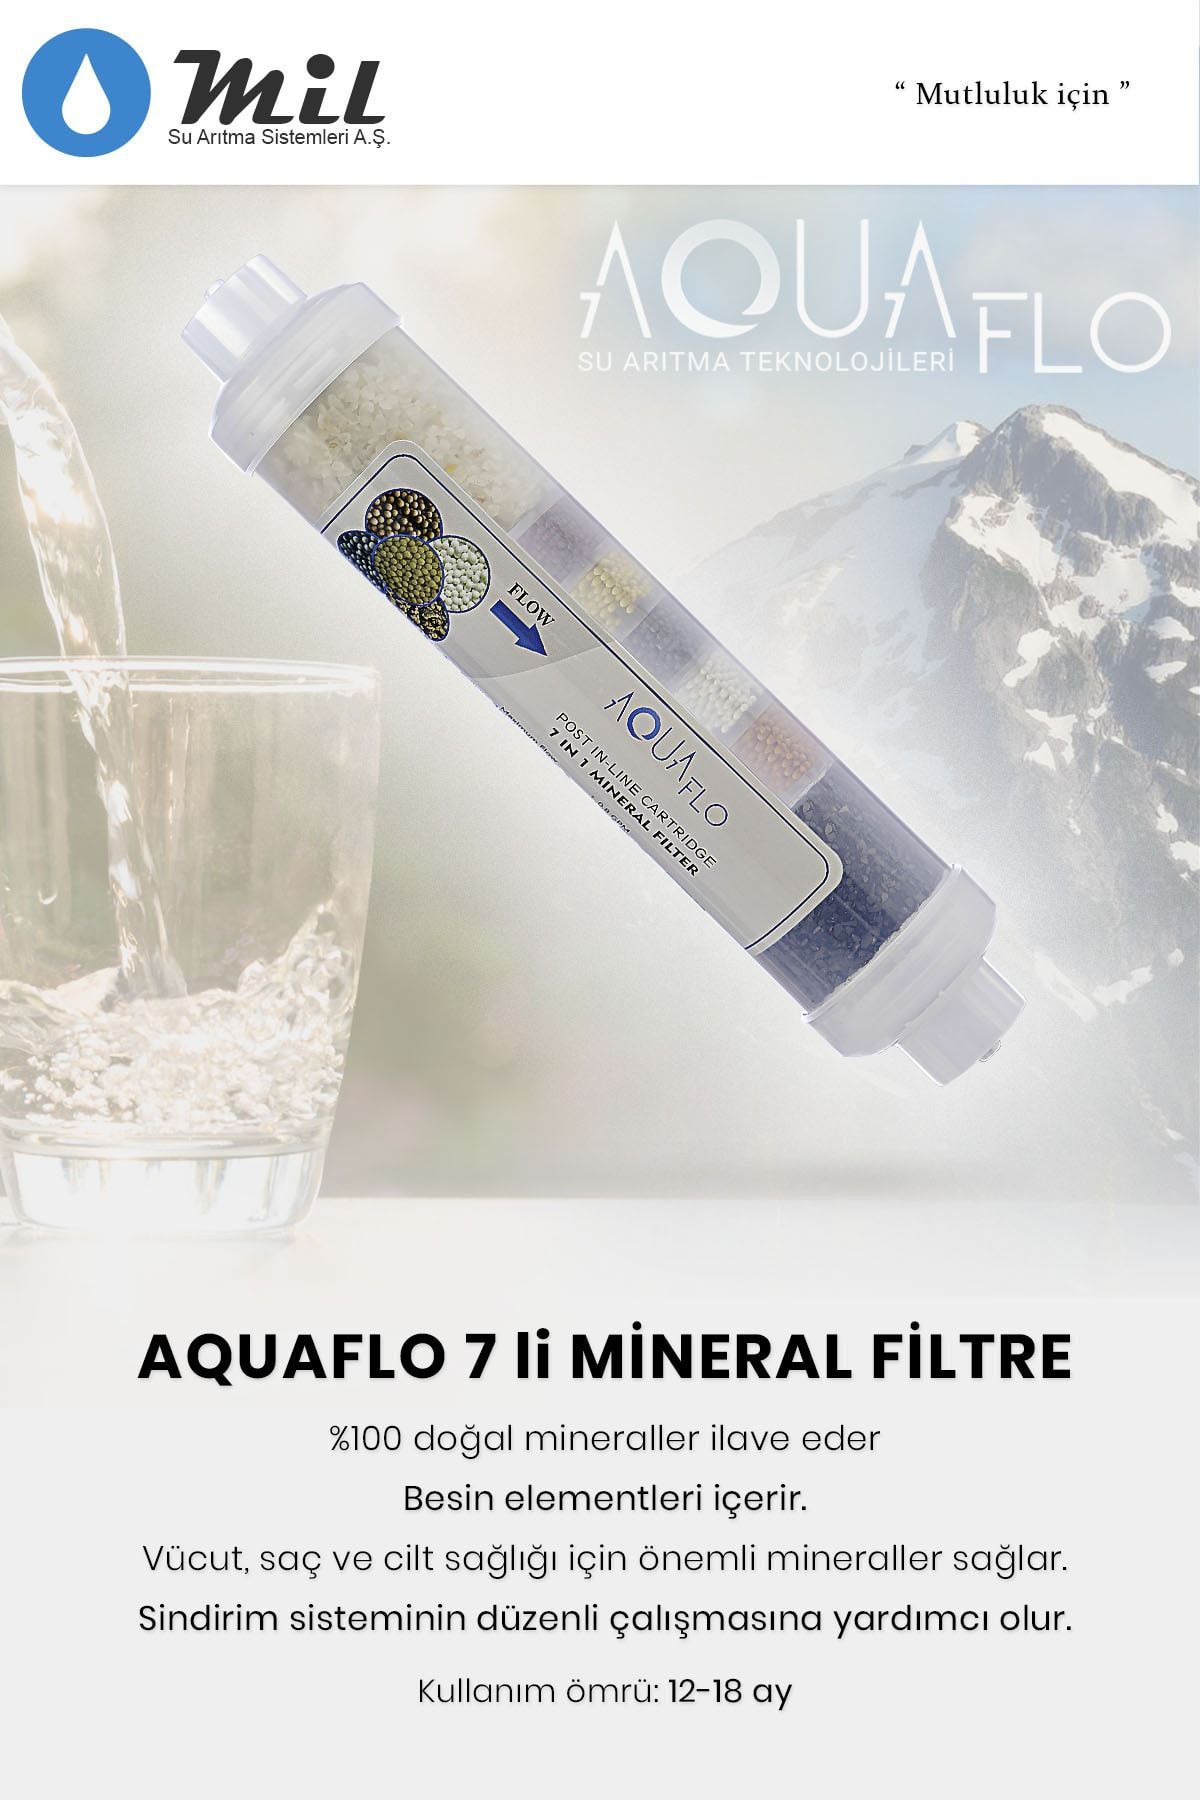 MİLSUART Aquaflo Su Arıtma Cihazı Için 7li Mineral Filtre